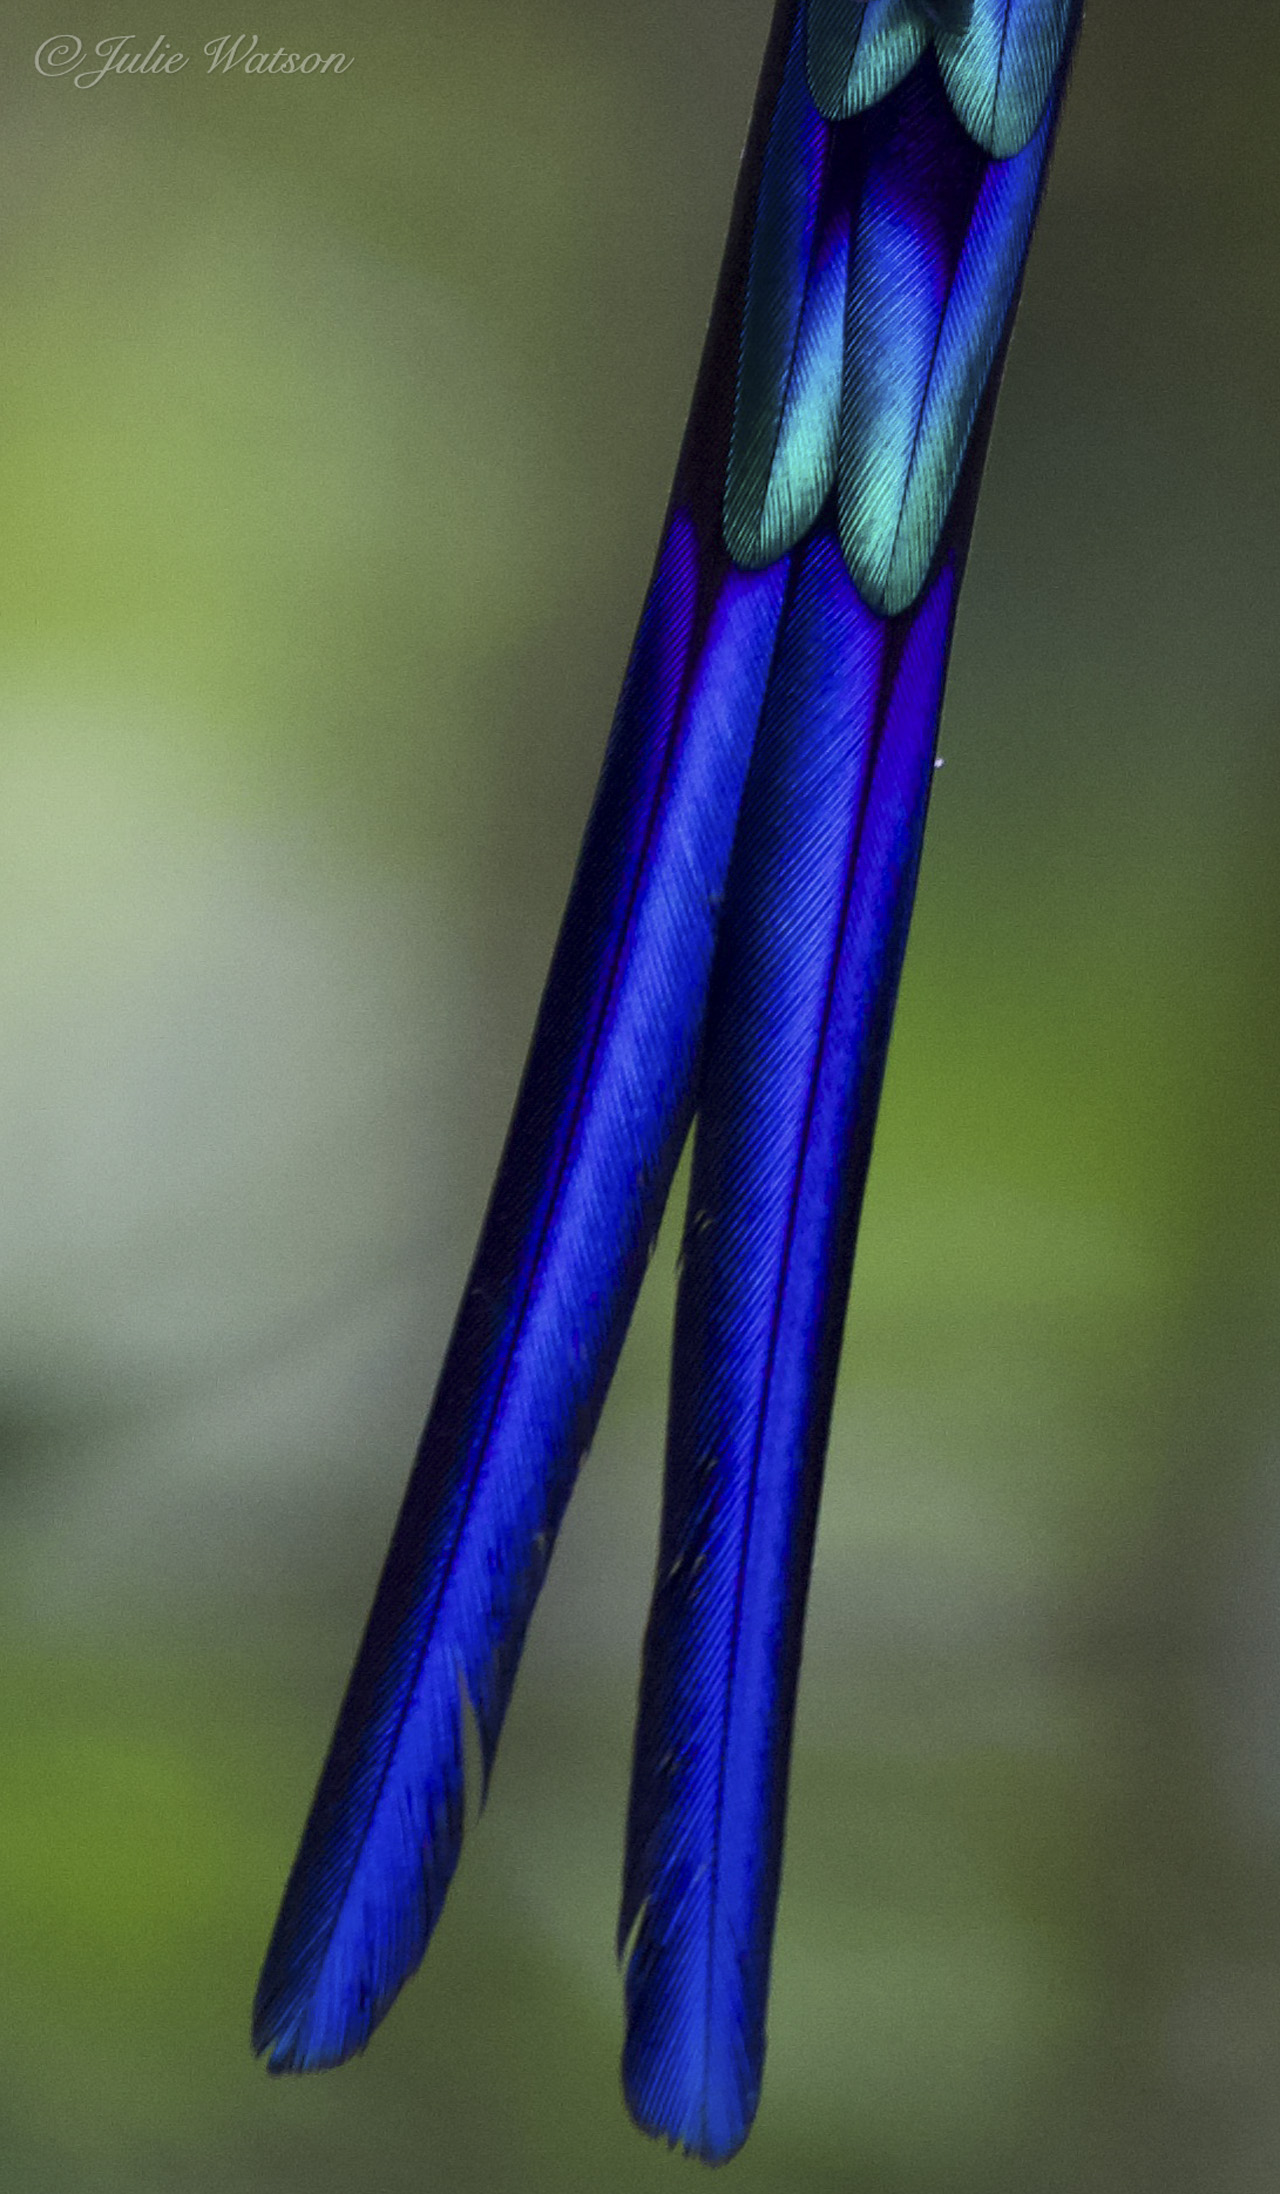 Las plumas de la cola del Sylph de cola violeta, nuestra la belleza de los colibríes de Ecuador